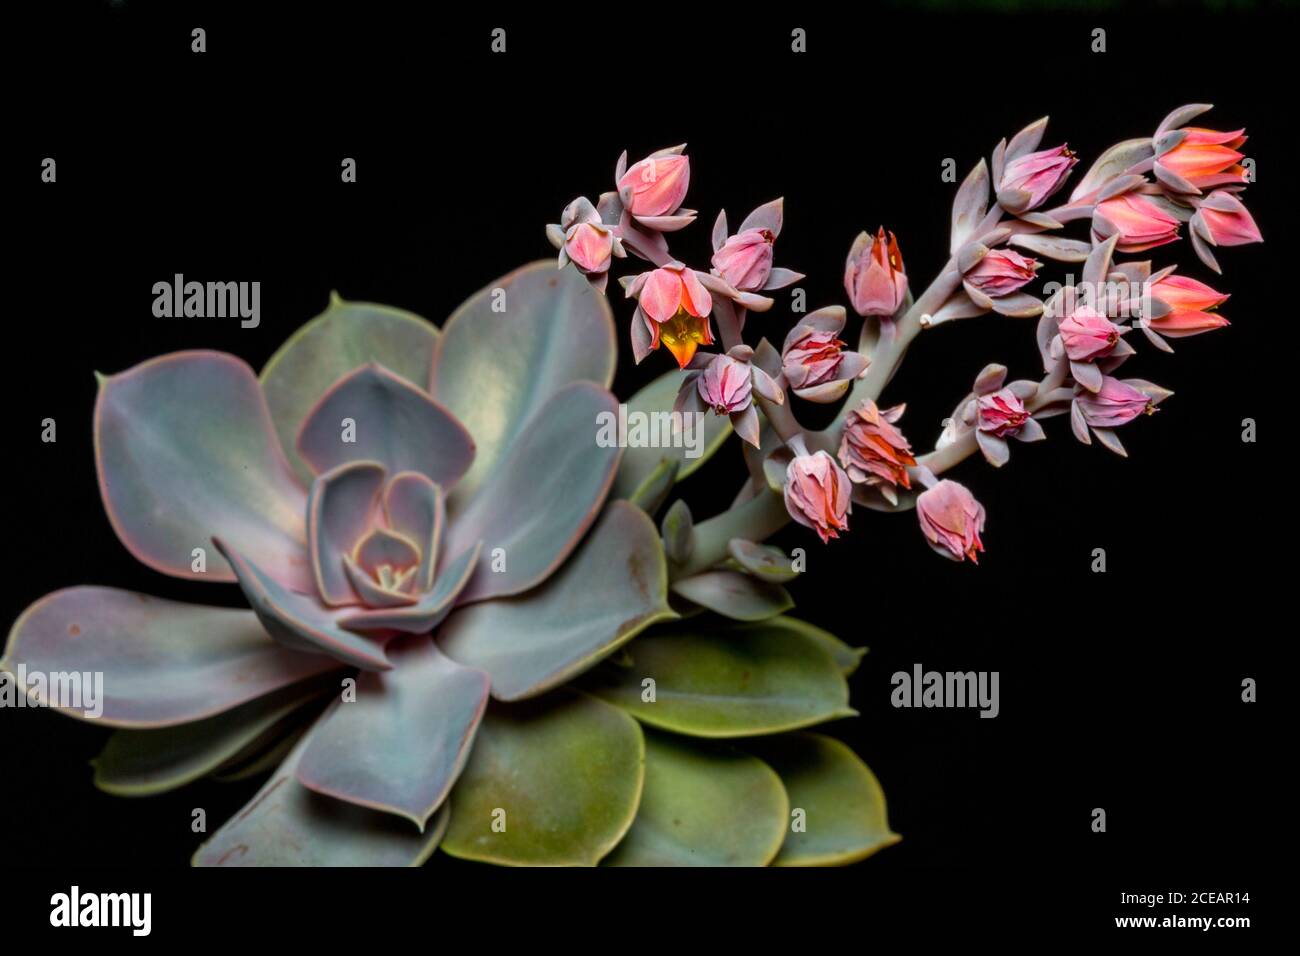 Echeveria Perle Von Nurnberg. Succulent flowering. Stock Photo